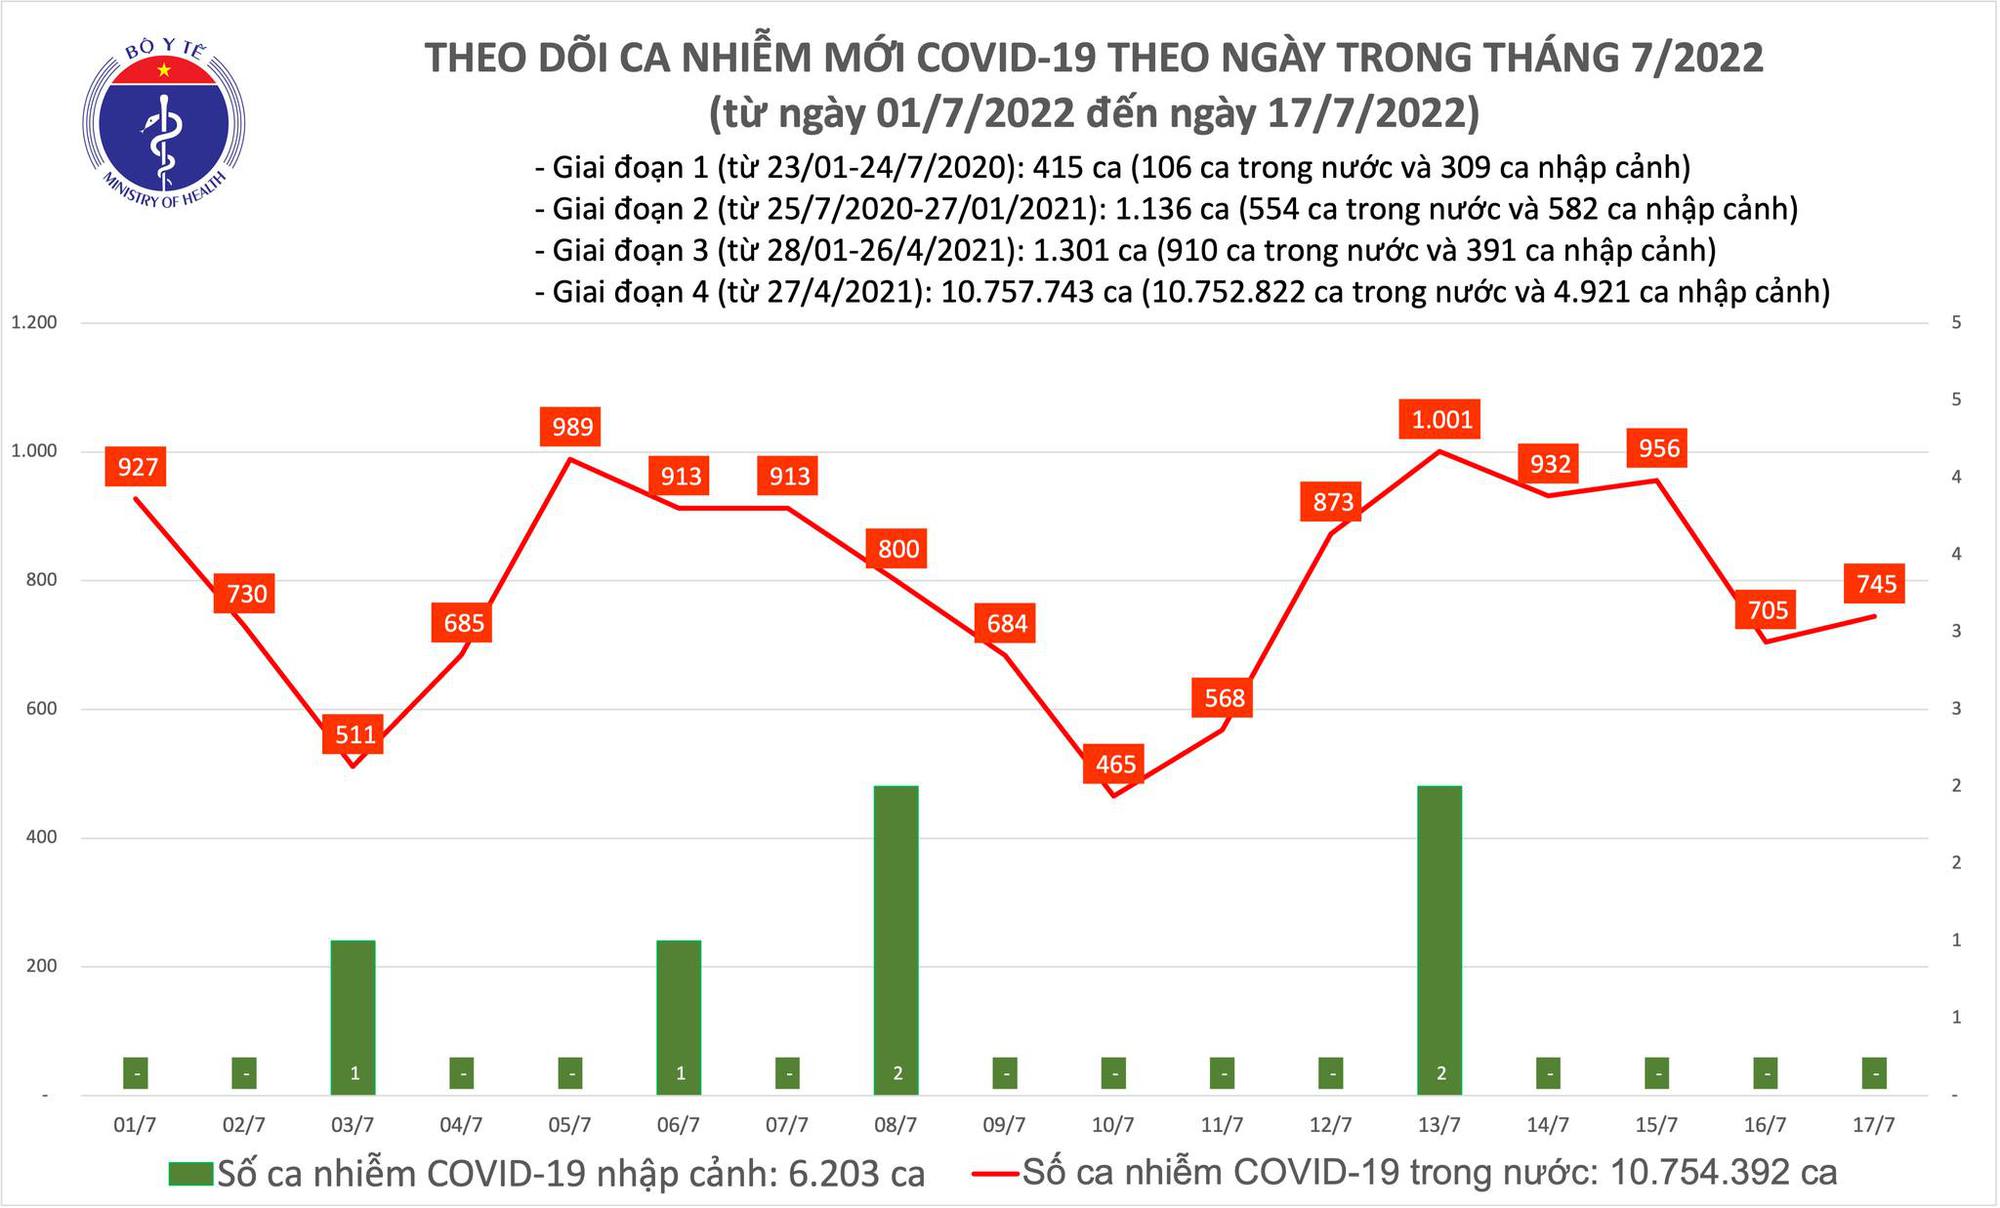 Ngày 17/7: Ca COVID-19 tăng nhẹ lên 745; số khỏi gấp gần 11 lần - Ảnh 1.